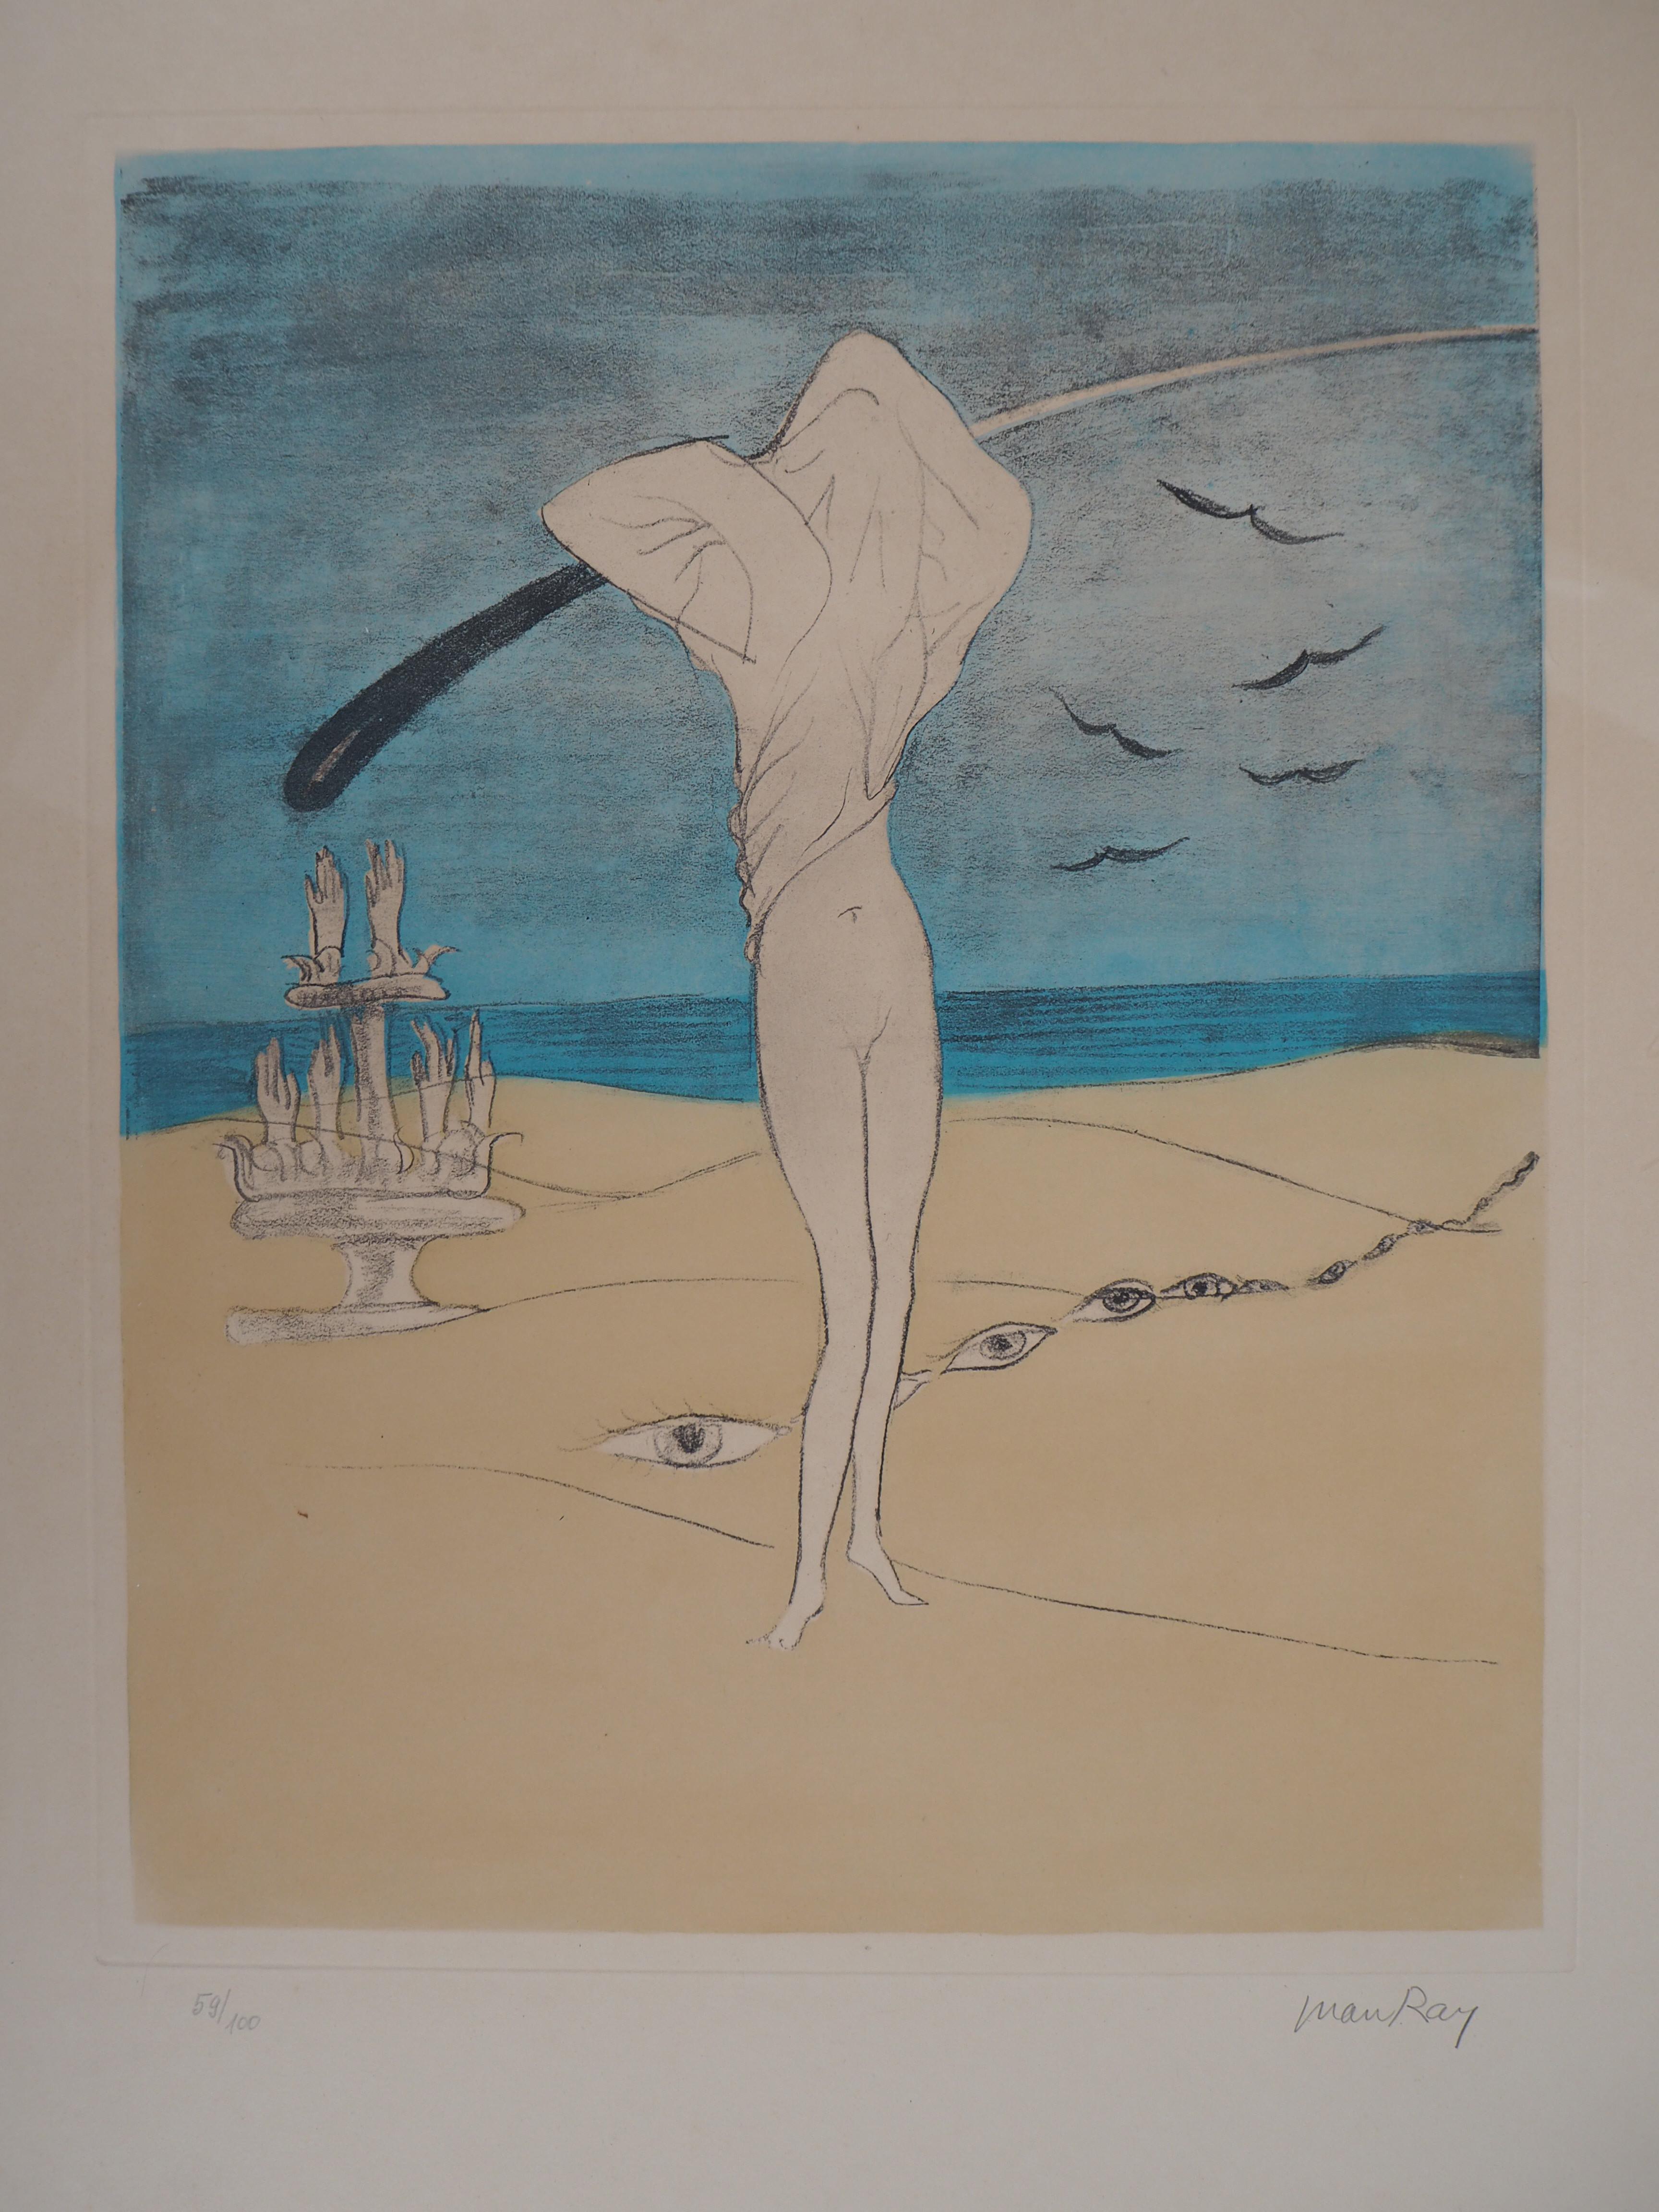 My First Love – Original handsignierte Lithographie, limitierte Auflage von 100 Exemplaren (Surrealismus), Print, von Man Ray